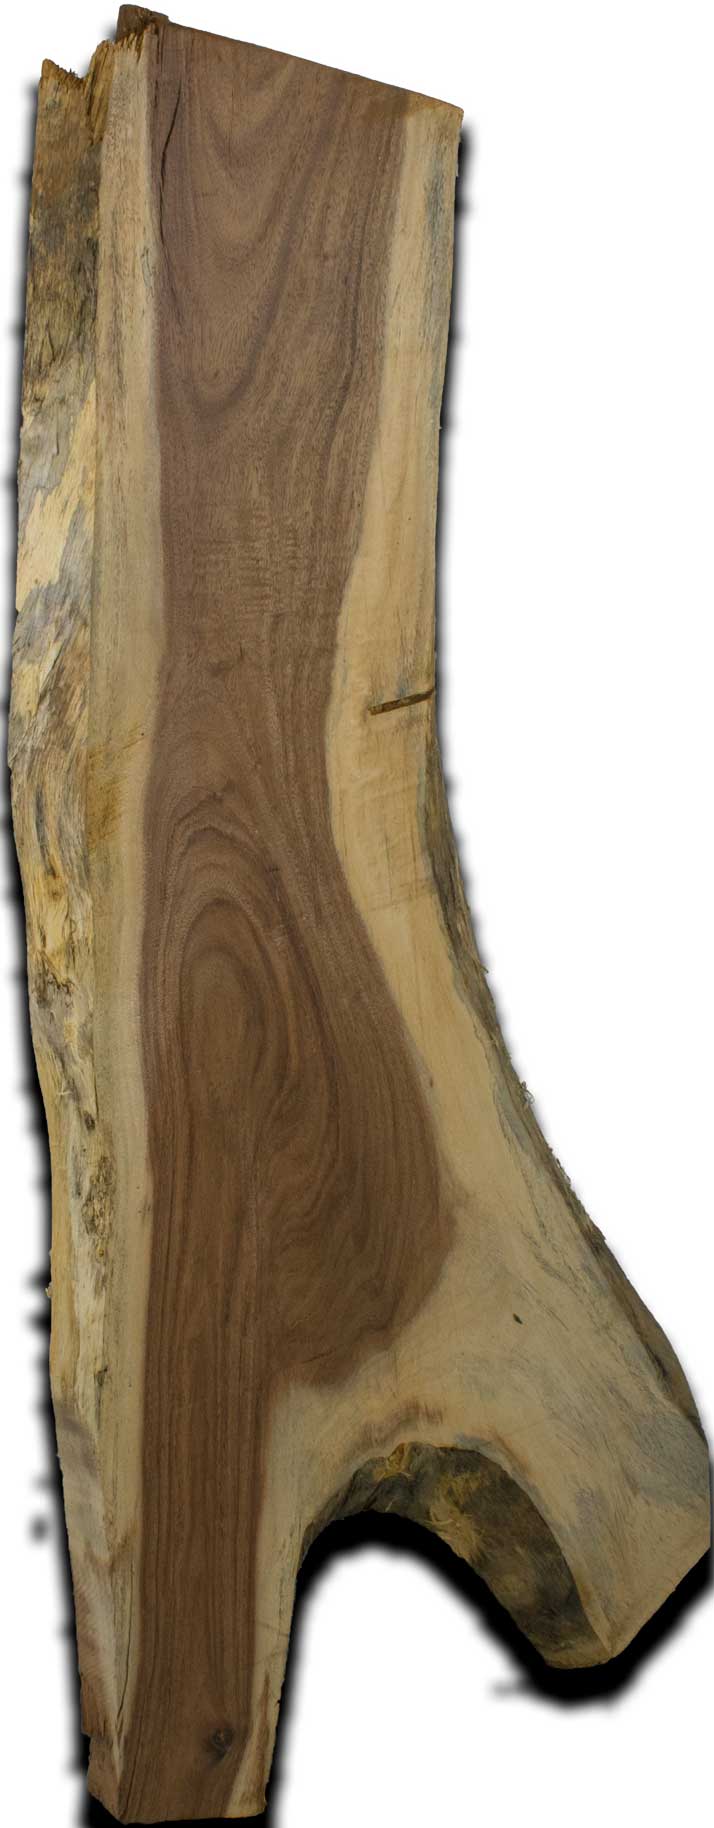 Albizia Live Edge Wood Slab 2.5 In. x 16 In. x 48 In. - VSHE3AL1